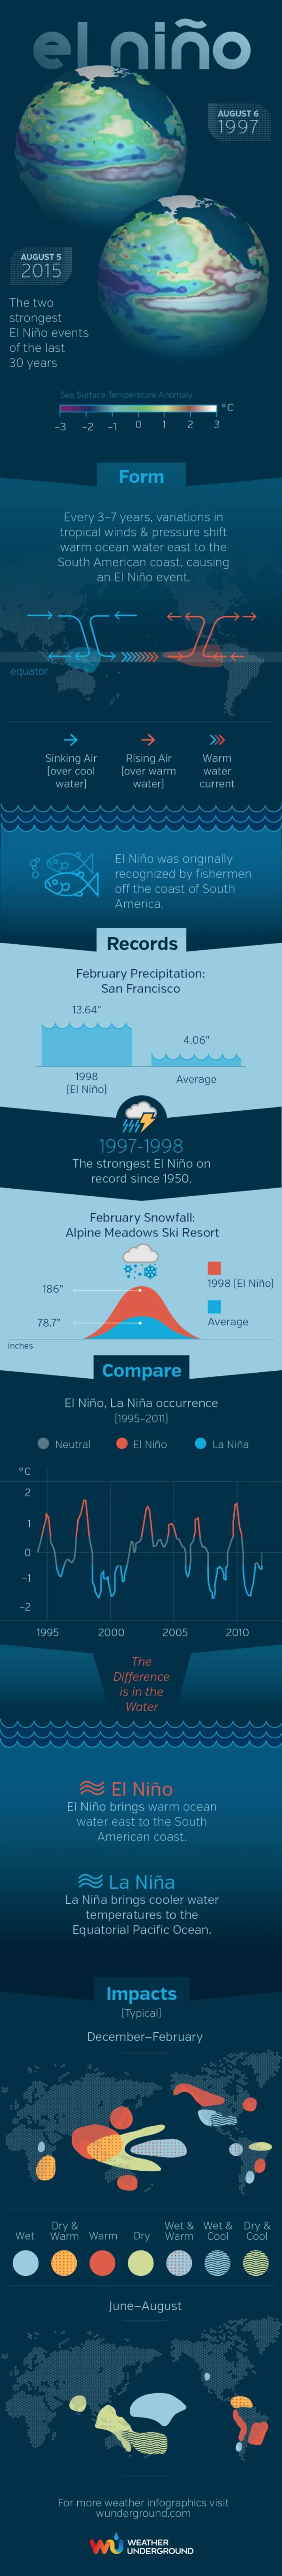 What is El Niño?